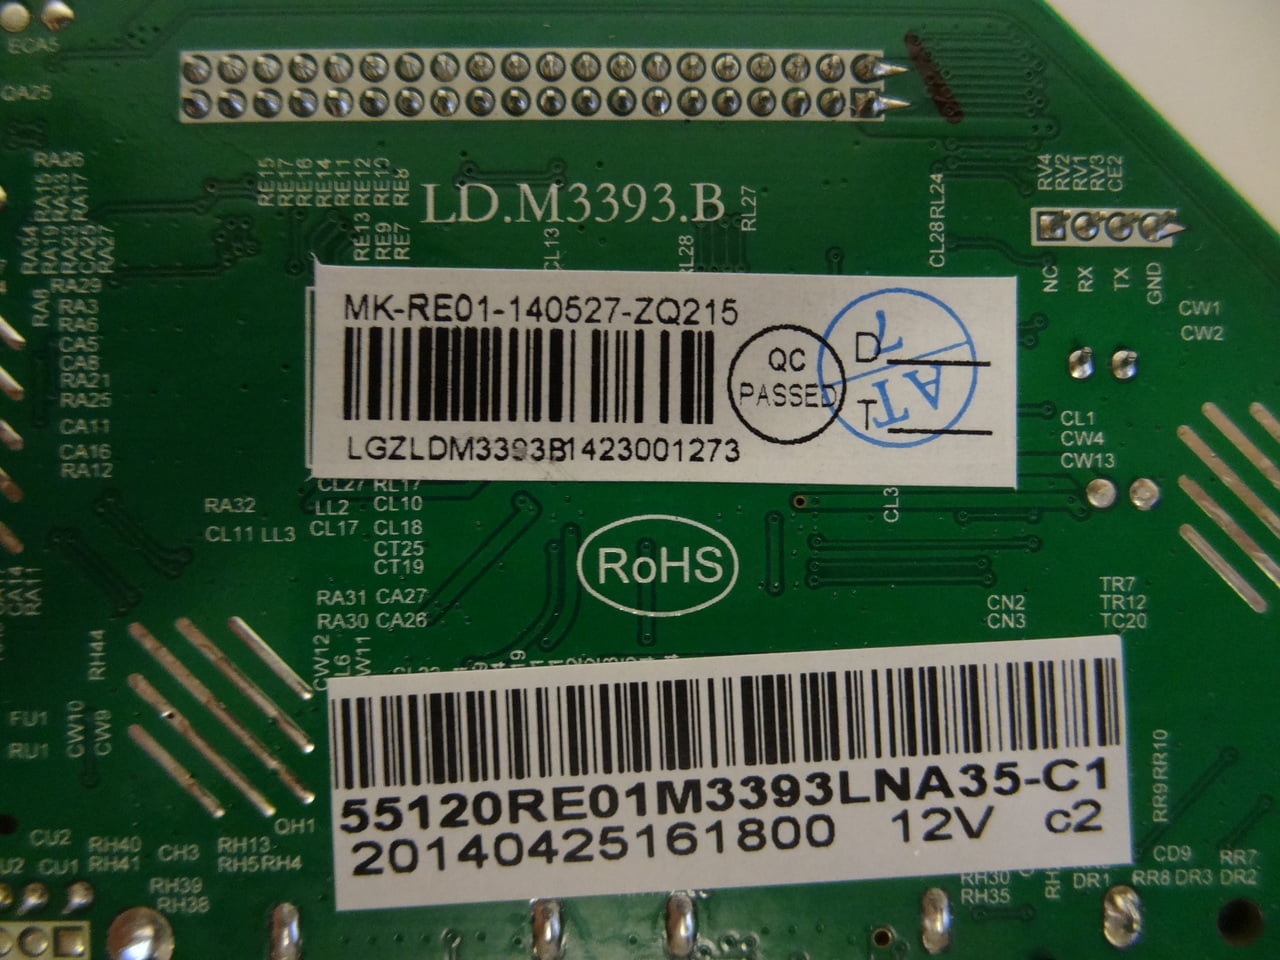 RCA LED55G55R120Q Main Board 55120RE01M3393LNA35-C2 READ DESC 1ST! 